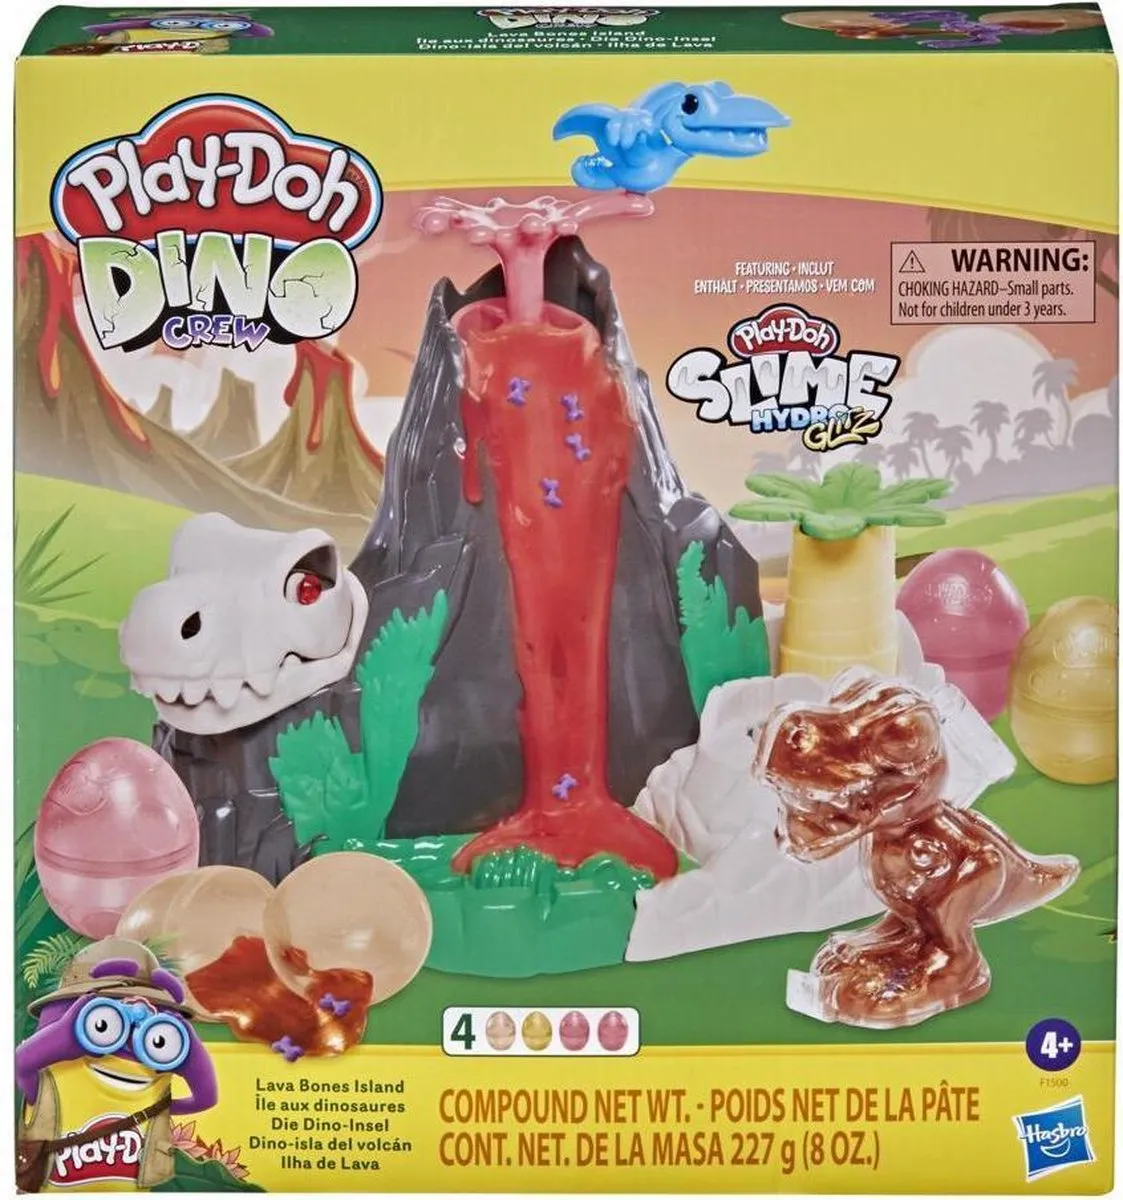 Plasticine Spel Dino Crew Play-Doh speelgoed